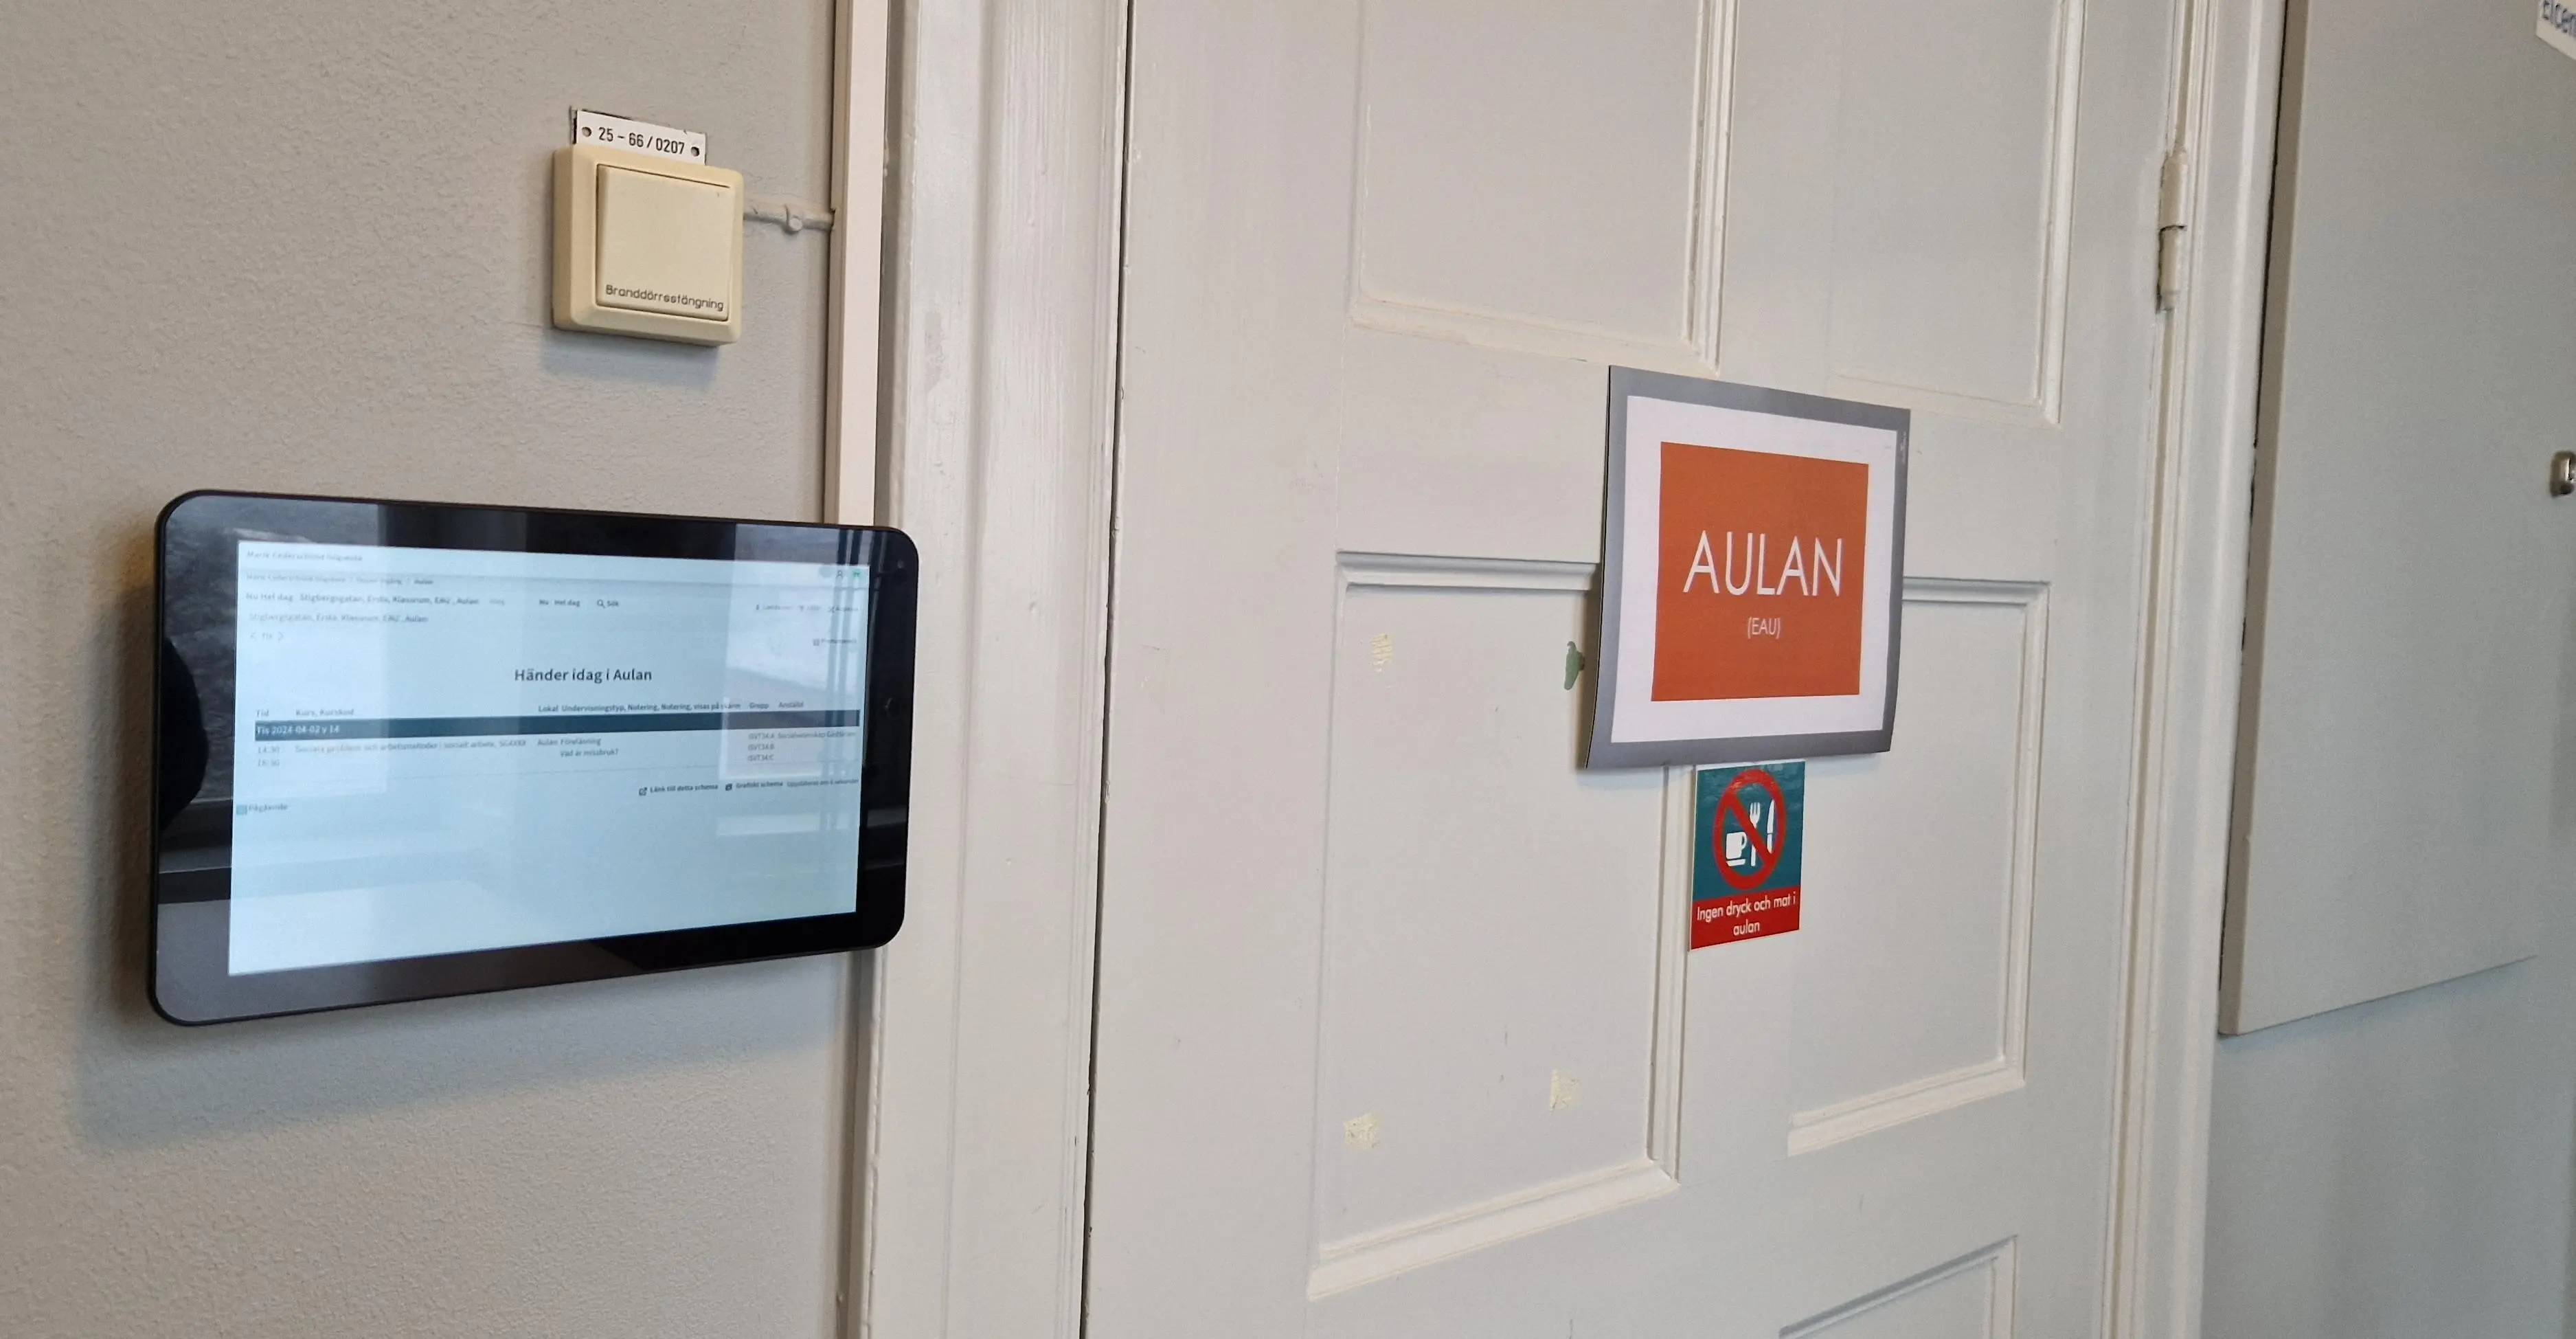 En svart skärm sitter placerad utanför Aulan. Bilden visar skärmen och Aulans dörr med en orange skylt där salsnamnet står.